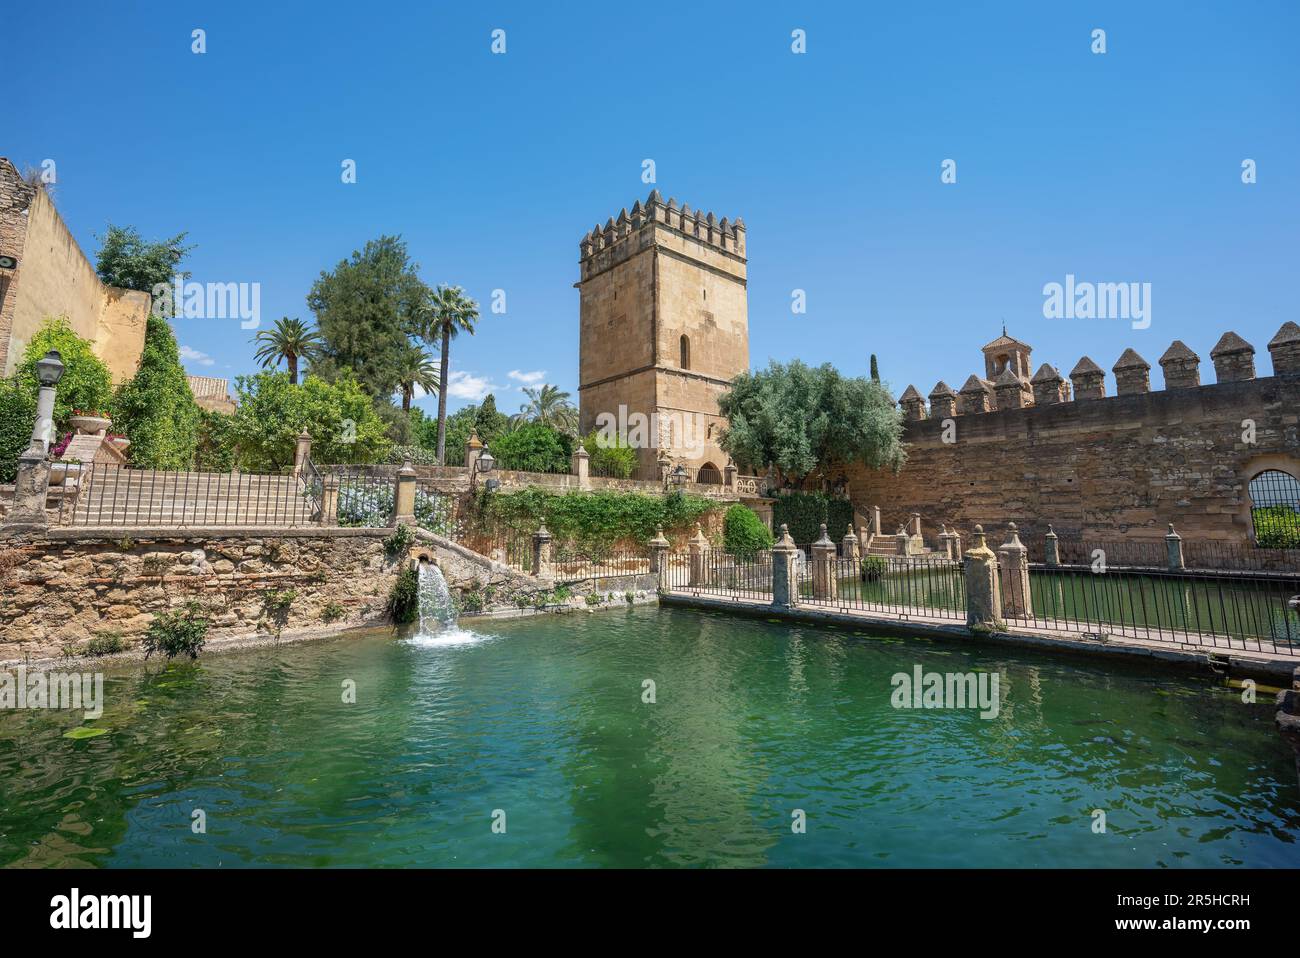 Gardens of Alcazar de los Reyes Cristianos - Cordoba, Andalusia, Spain Stock Photo